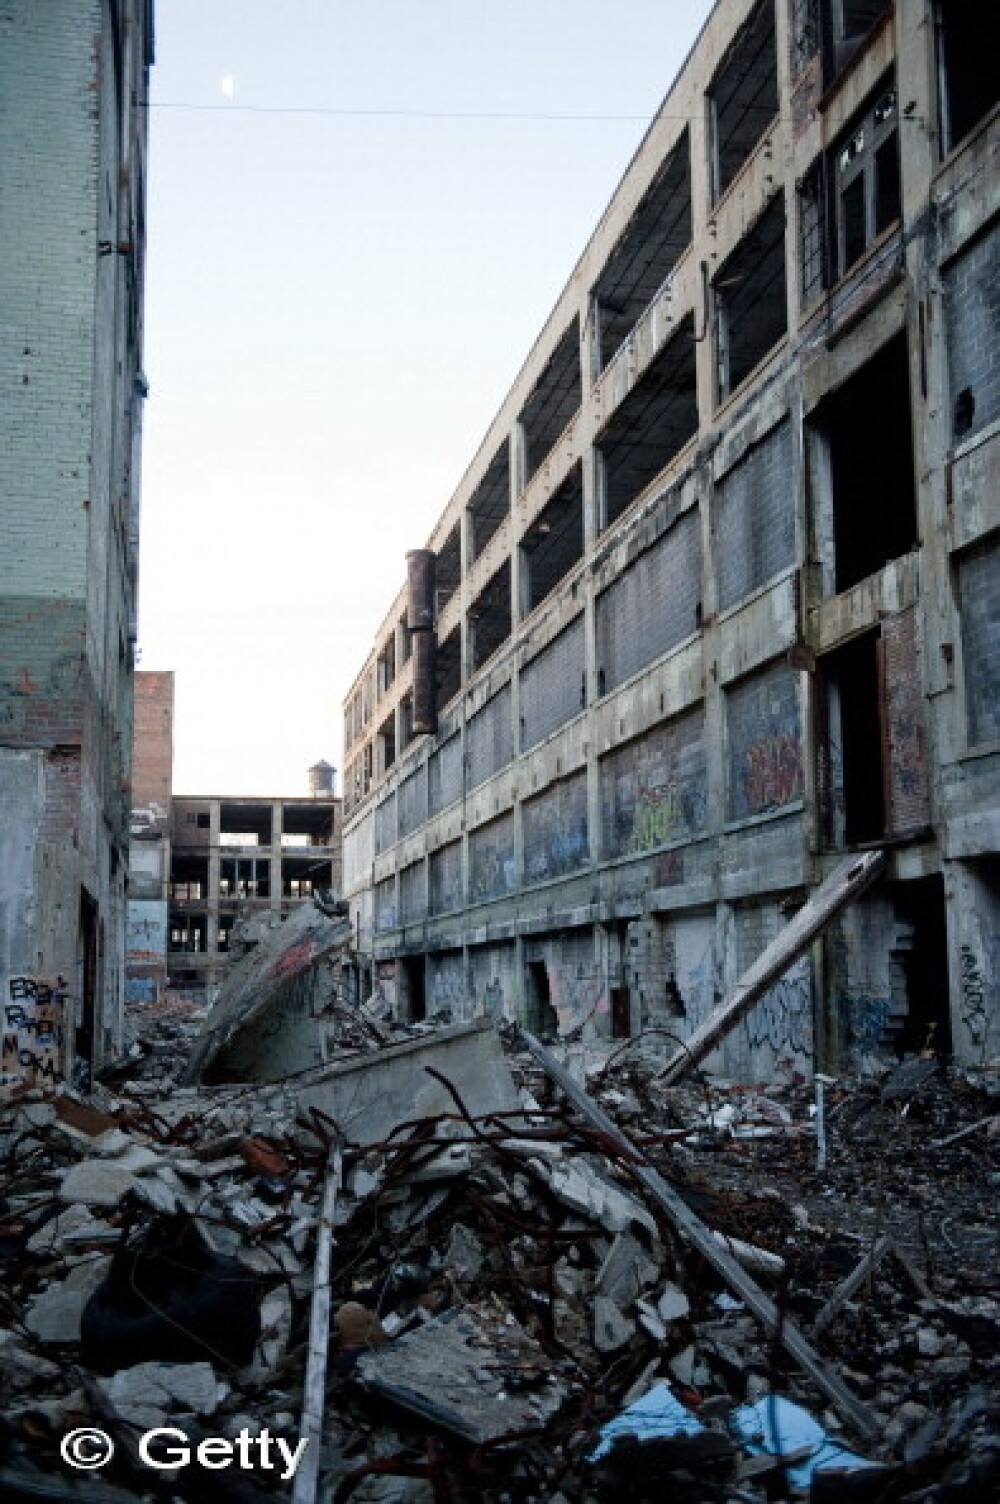 Detroit, cel mai mare oras american declarat in faliment: cum a pierdut jumatate din populatie - Imaginea 2